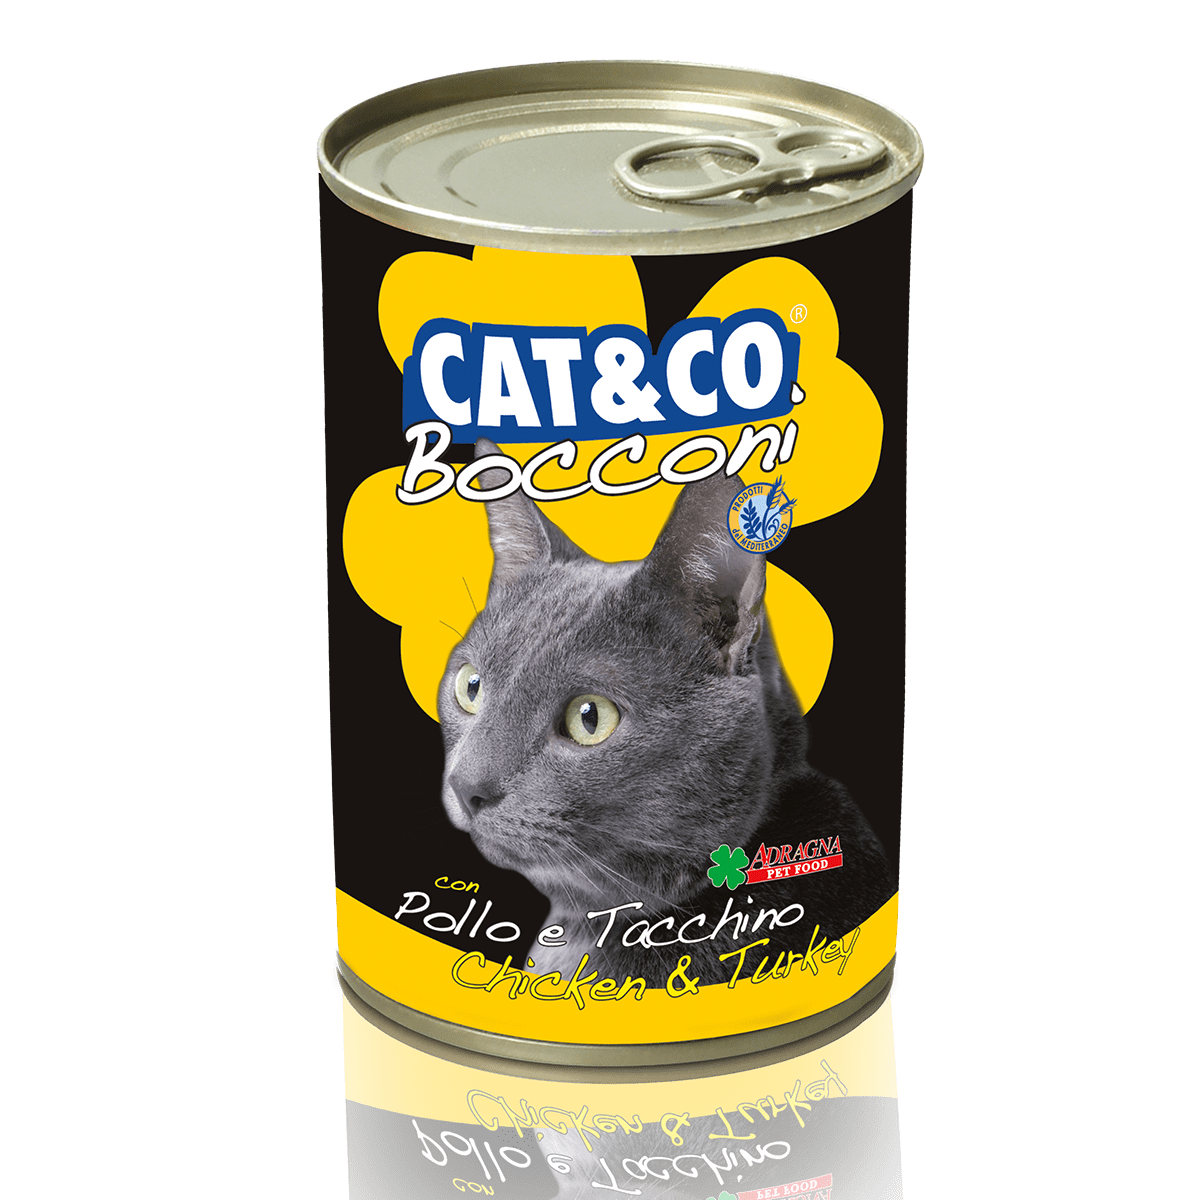 Cat&Co Bocconi Pollo e tacchino